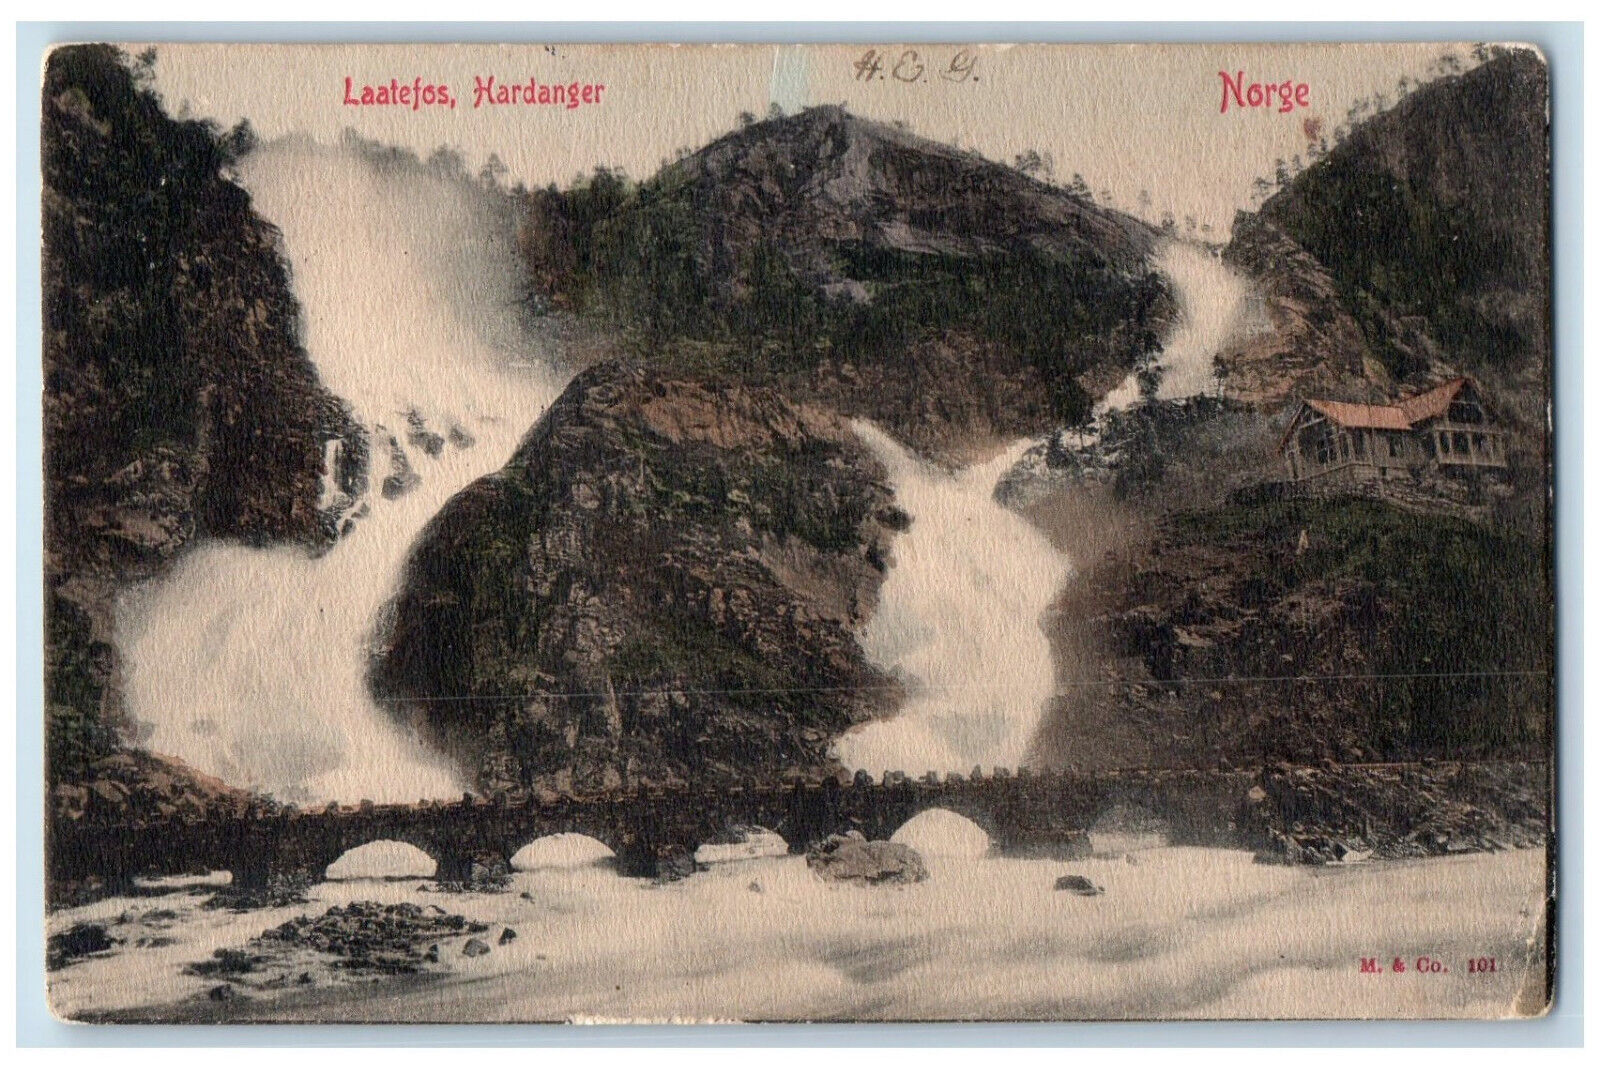 Hardanger Hardangerfjord Norway Postcard Laatefos Waterfalls 1907 Antique Posted